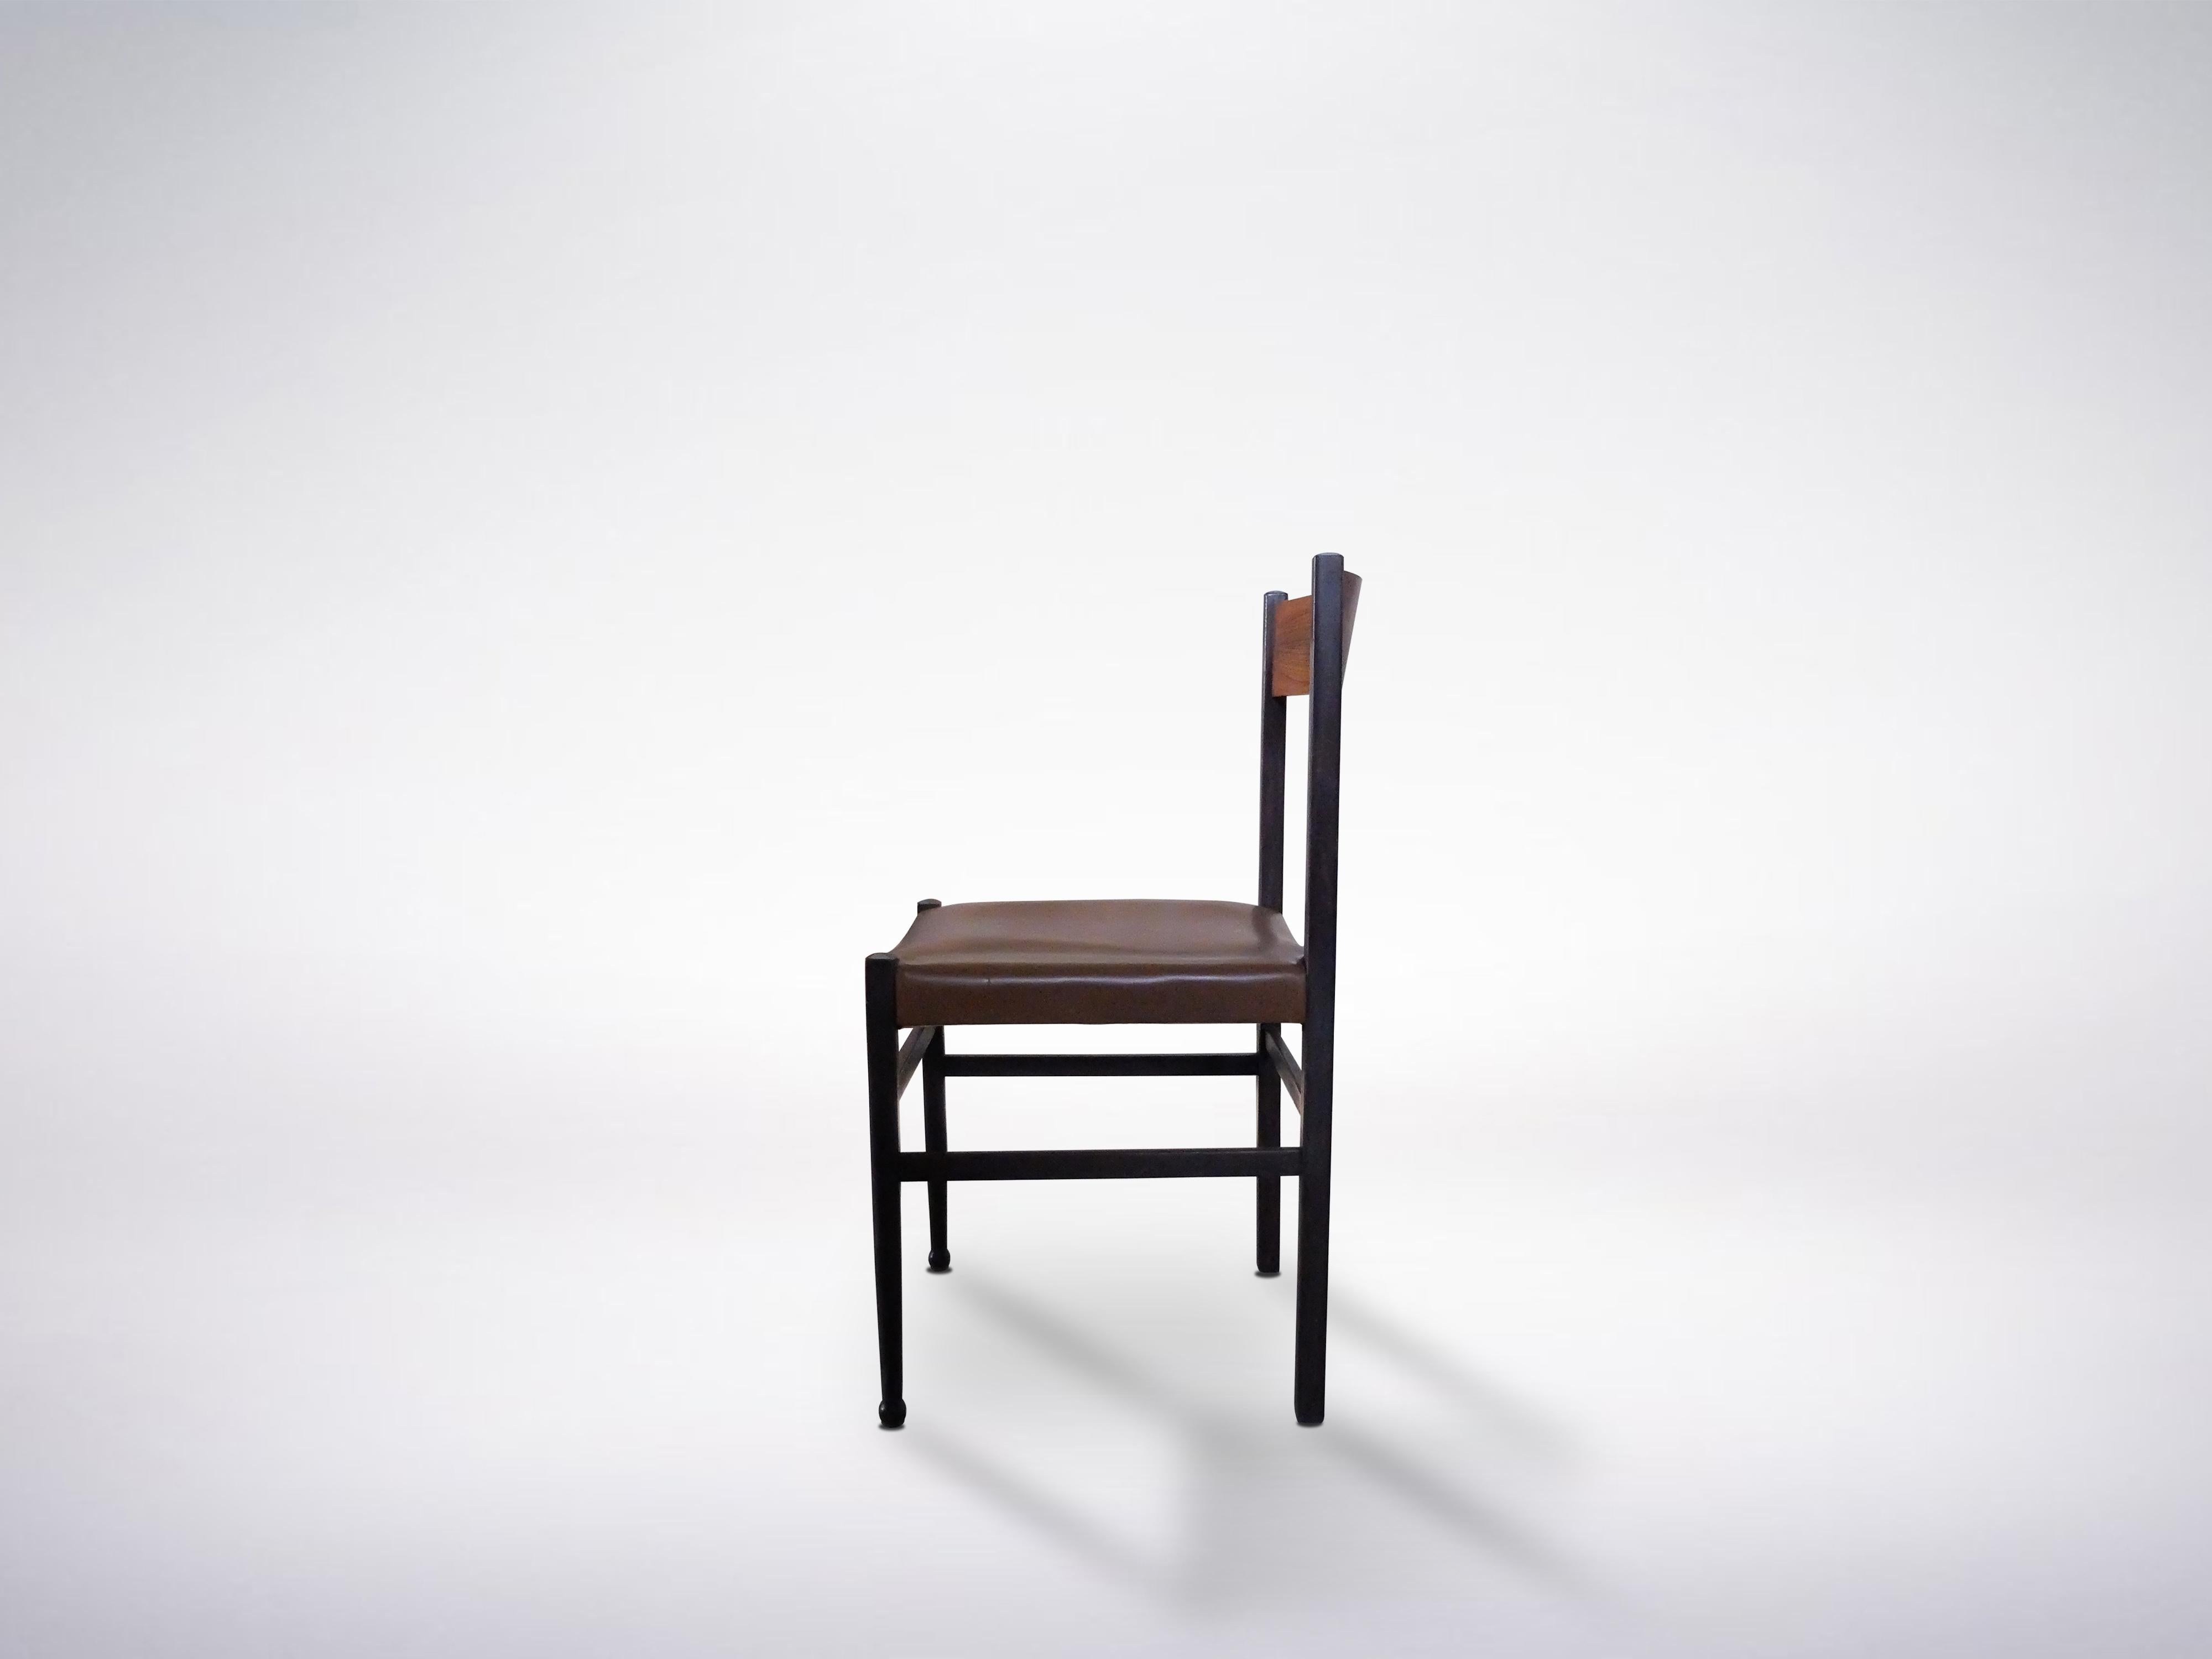 Magnifique ensemble de 4 chaises en bois de Gianfranco Frattini, années 1950 : un parfait complément italien du milieu du siècle dans une salle à manger bien aménagée.

De subtiles transitions géométriques entre les courbes et les lignes rehaussent